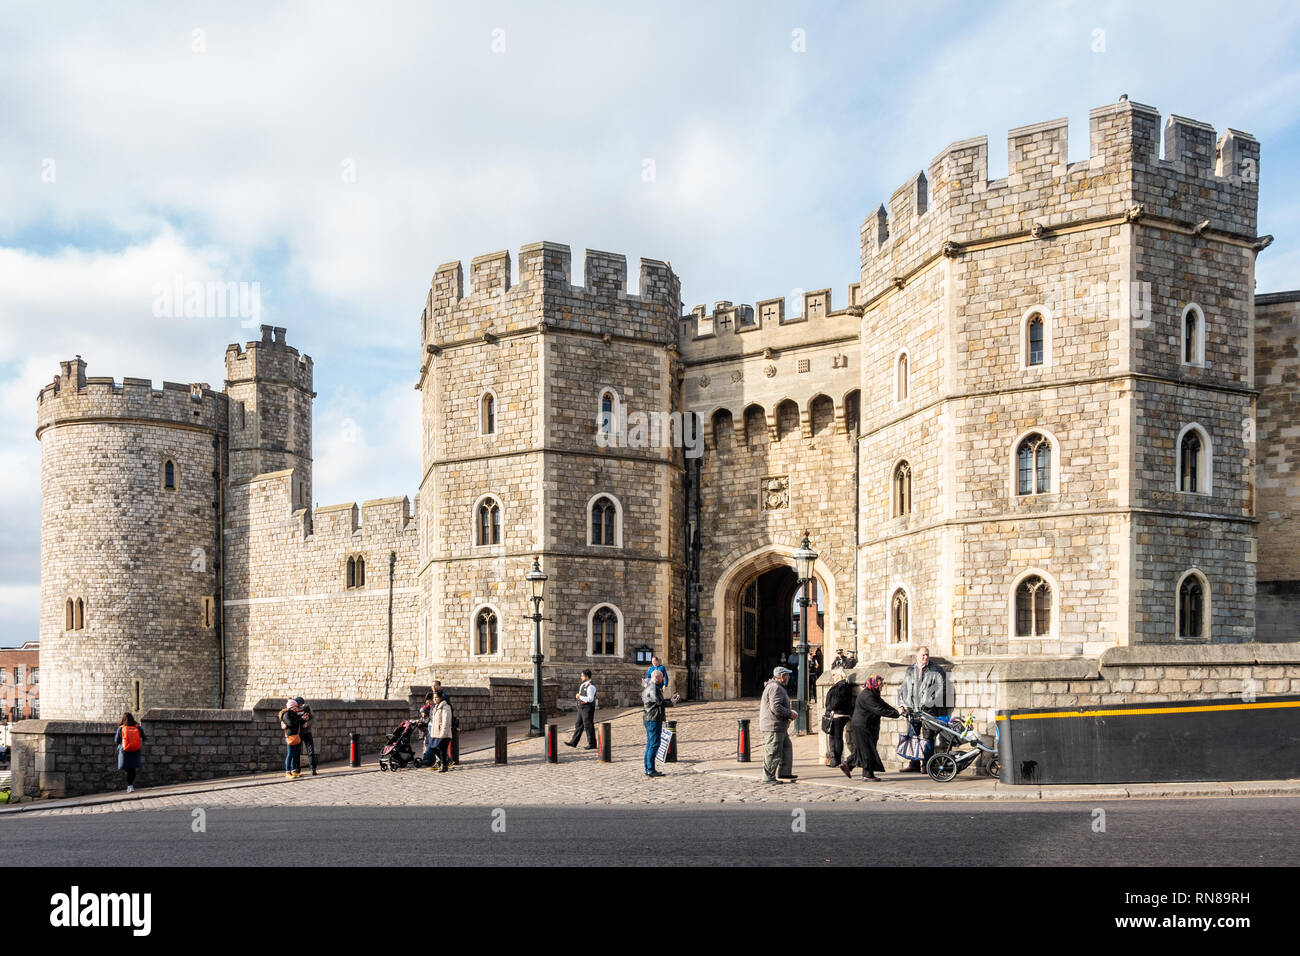 Re Heny VIII Gateway è uno degli ingressi nel Castello di Windsor, una storica residenza reale di Windsor, Inghilterra, Regno Unito. Foto Stock